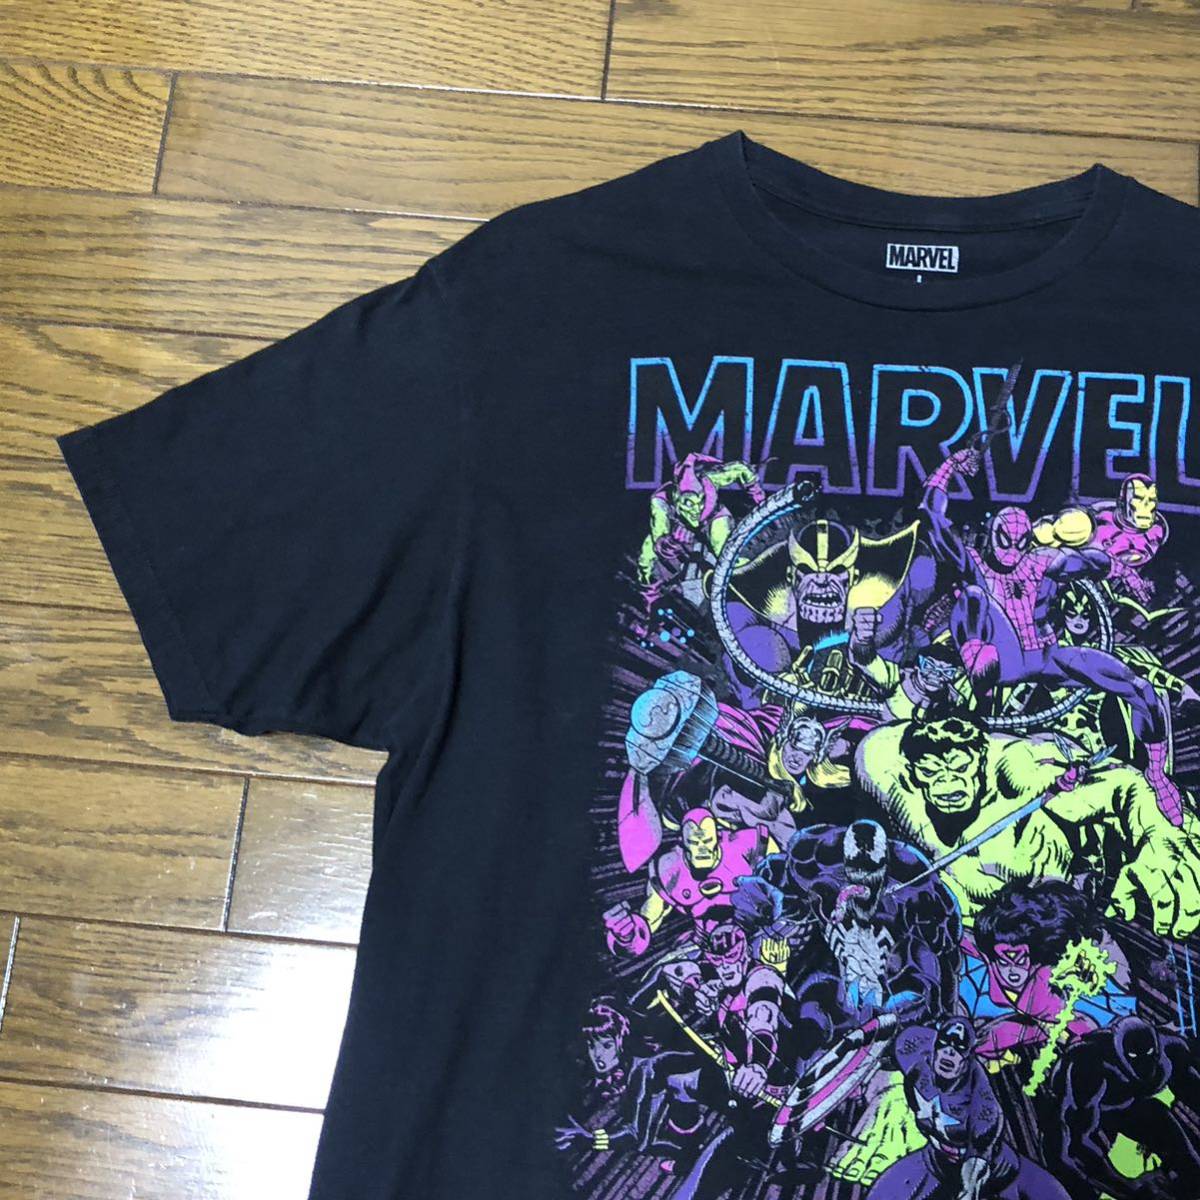 MARVEL マーベル ビッグロゴ コミック ヒーロー XL 黒 半袖Tシャツ - T